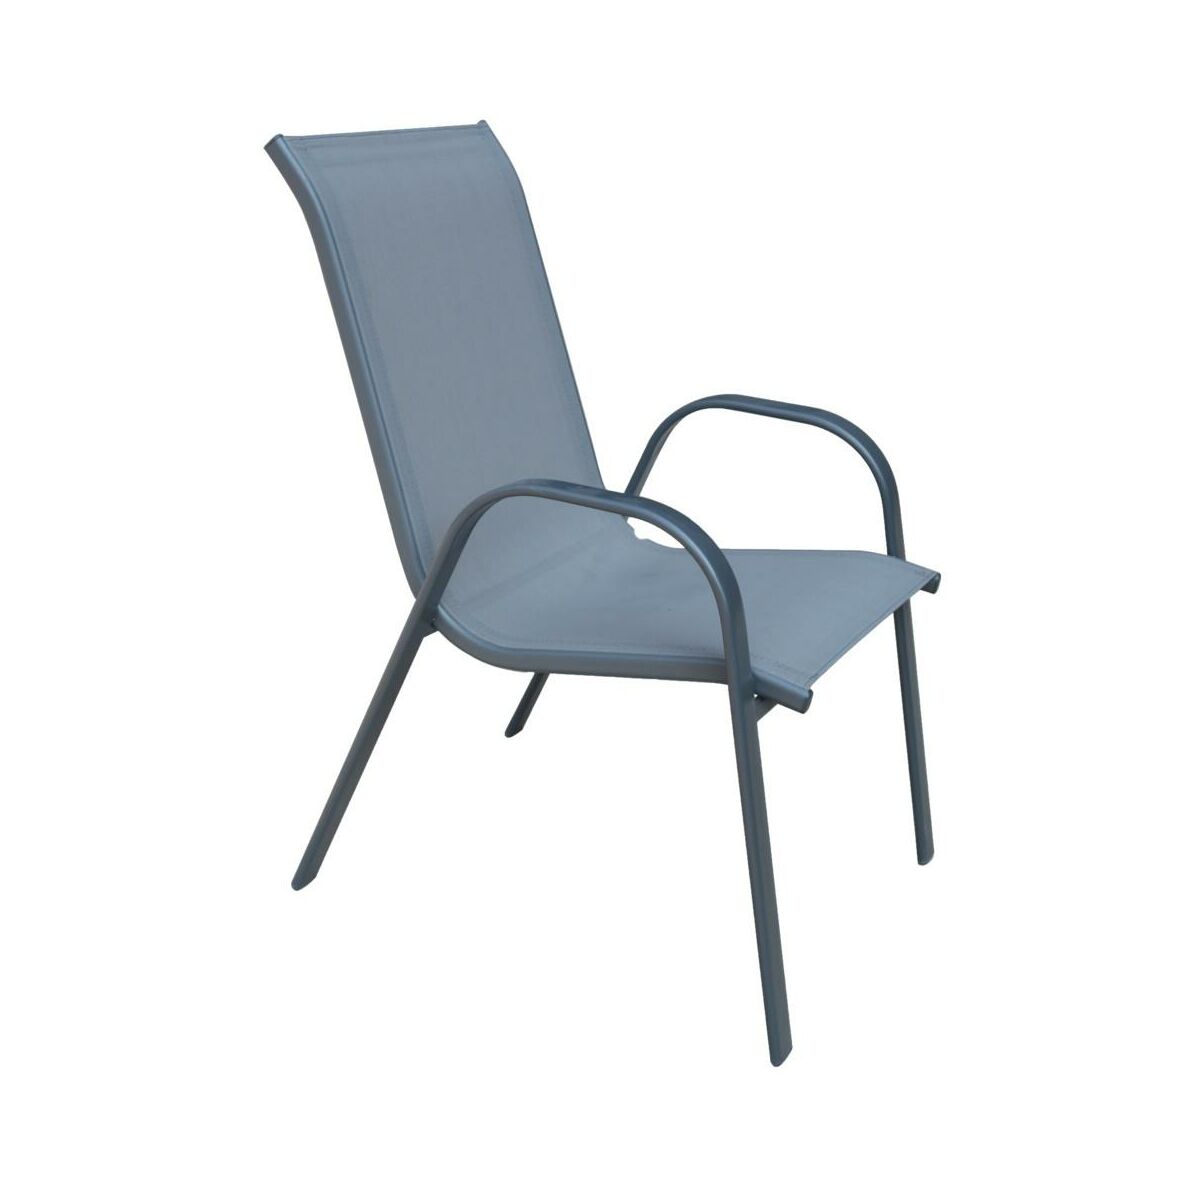 Krzeslo Ogrodowe Cino Metalowe Antracytowe Krzesla Fotele Lawki Ogrodowe W Atrakcyjnej Cenie W Sklepach Leroy Merlin